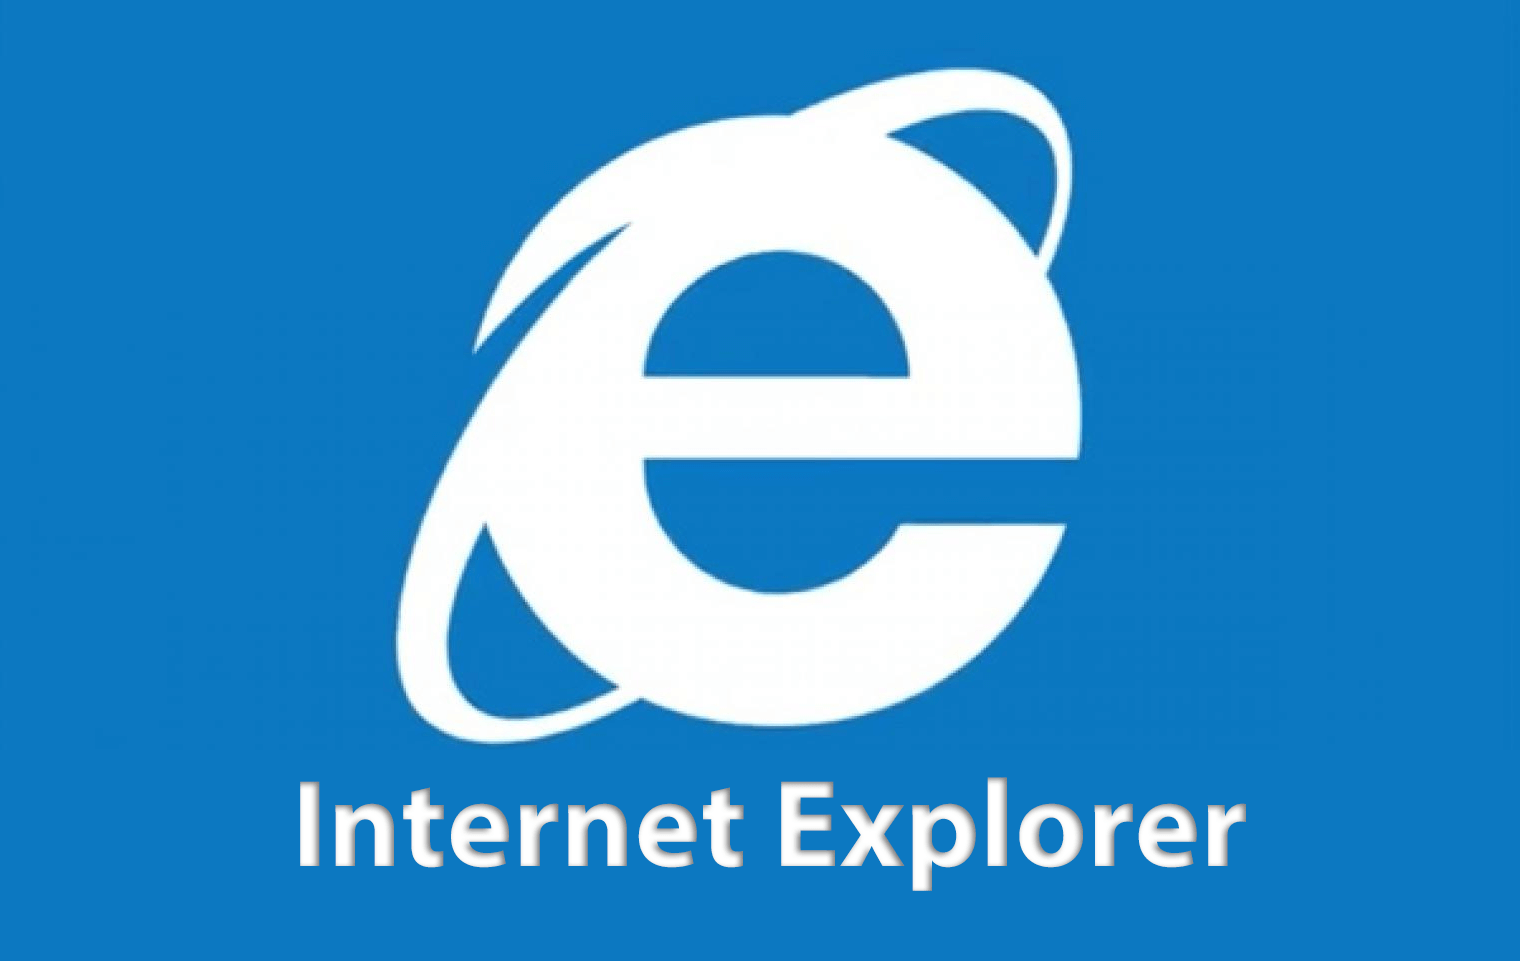 Internet Explorer trên Windows 10 sẽ ngừng hoạt động từ tháng 6/2022